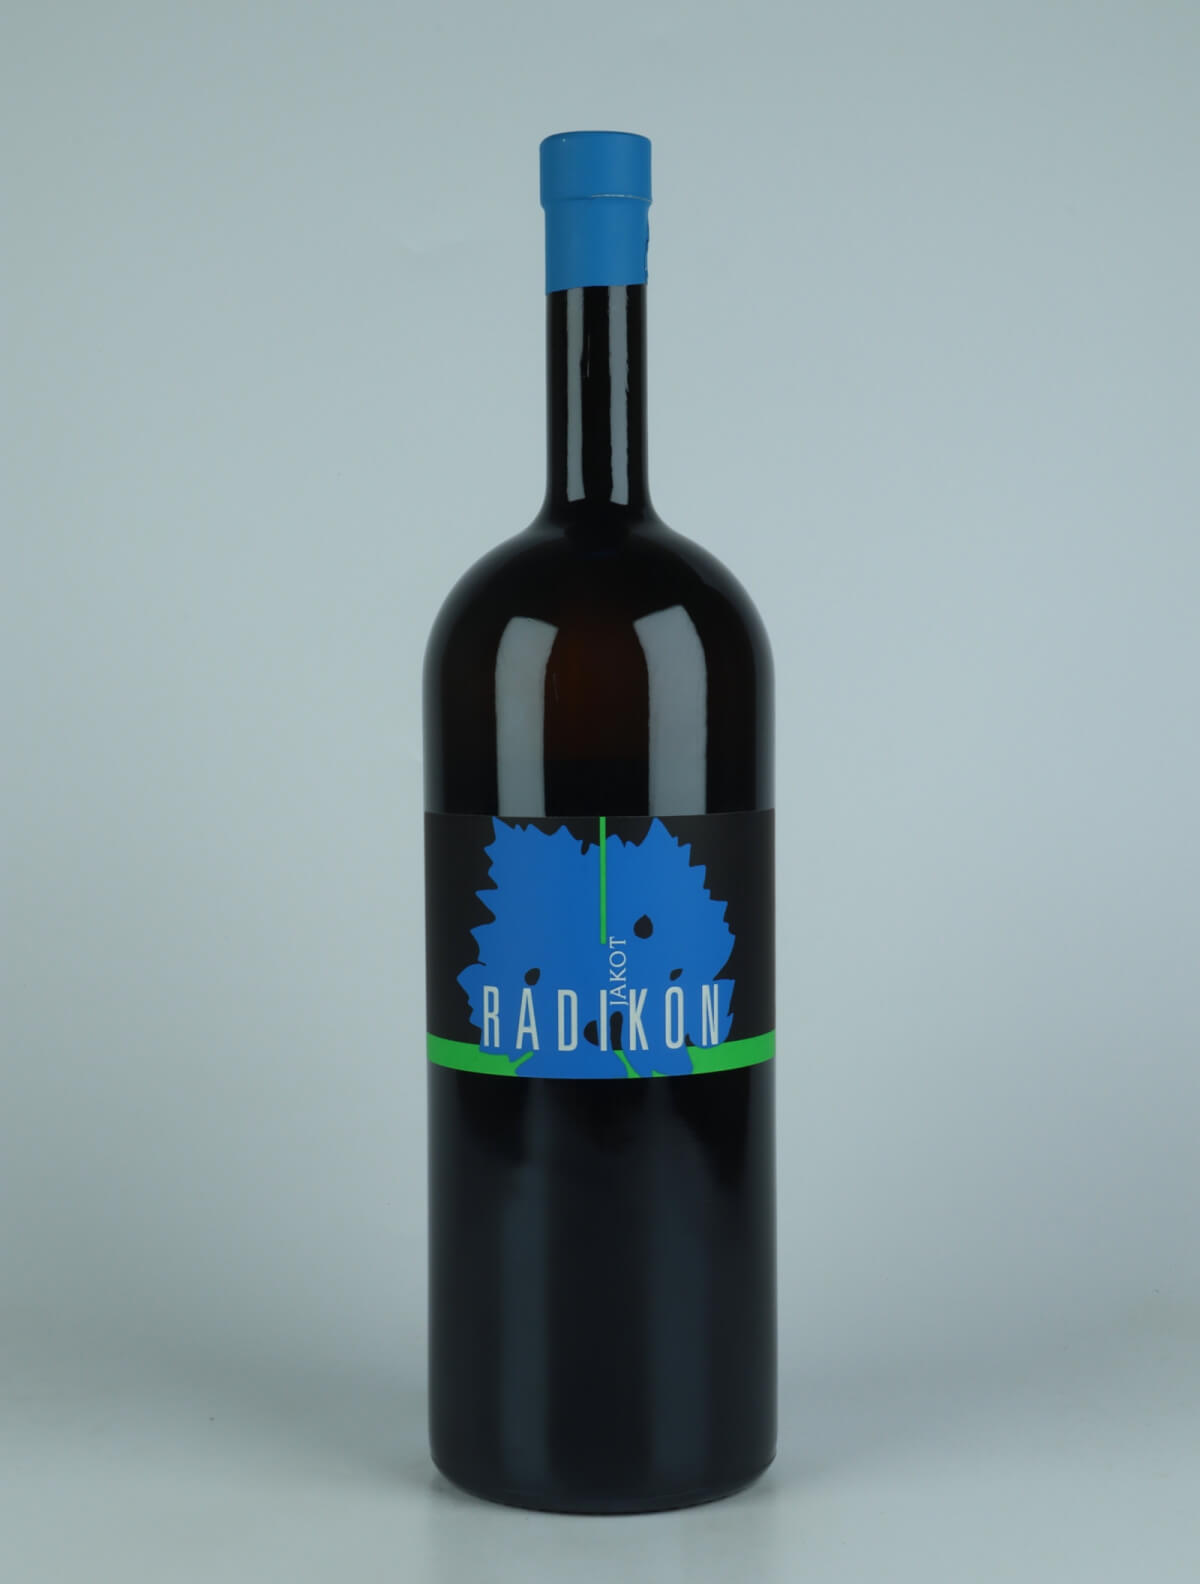 A bottle 2018 Jakot Orange wine from Radikon, Friuli in Italy